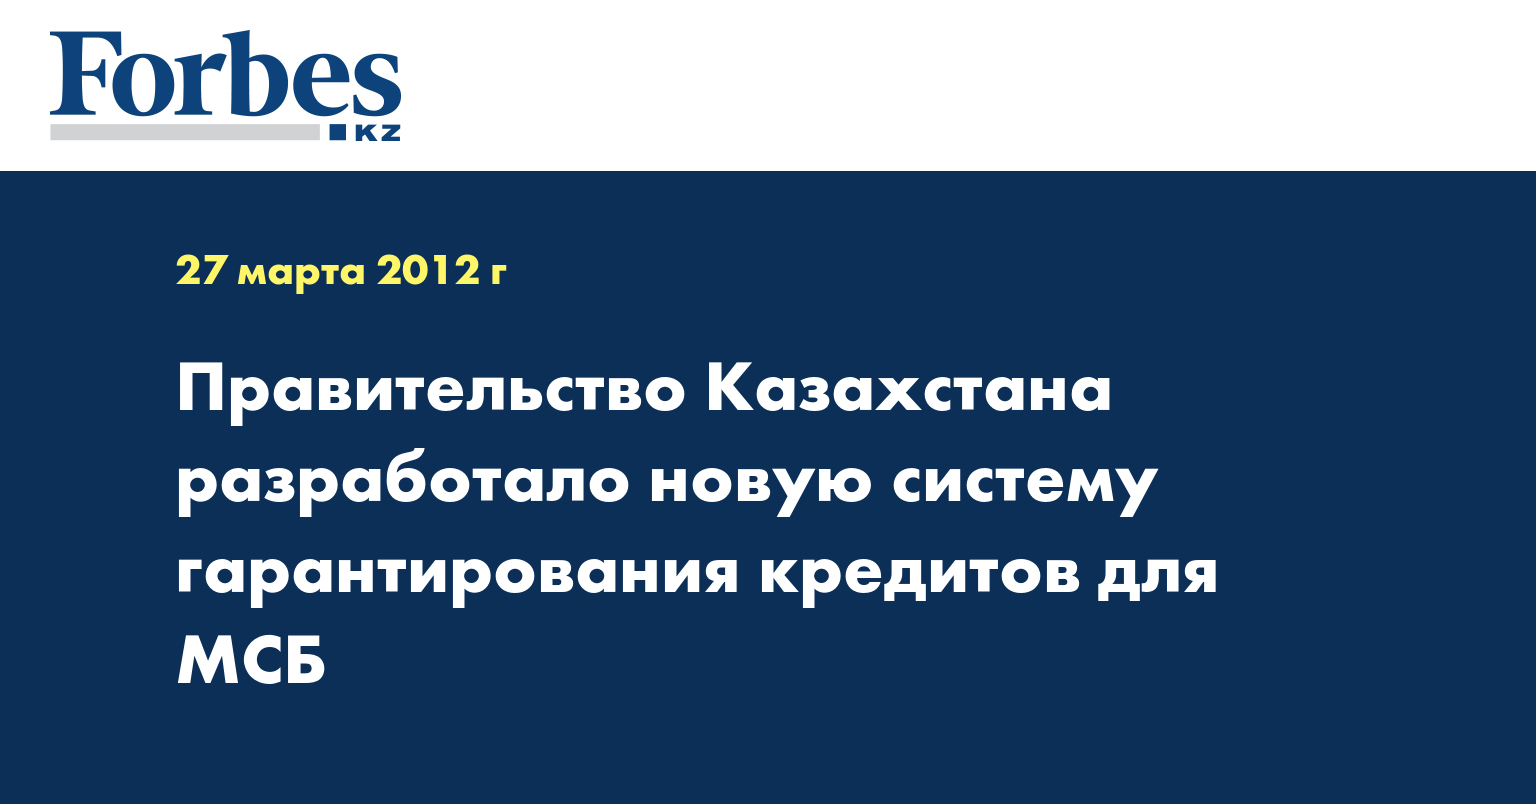 Правительство Казахстана разработало новую систему гарантирования кредитов для МСБ